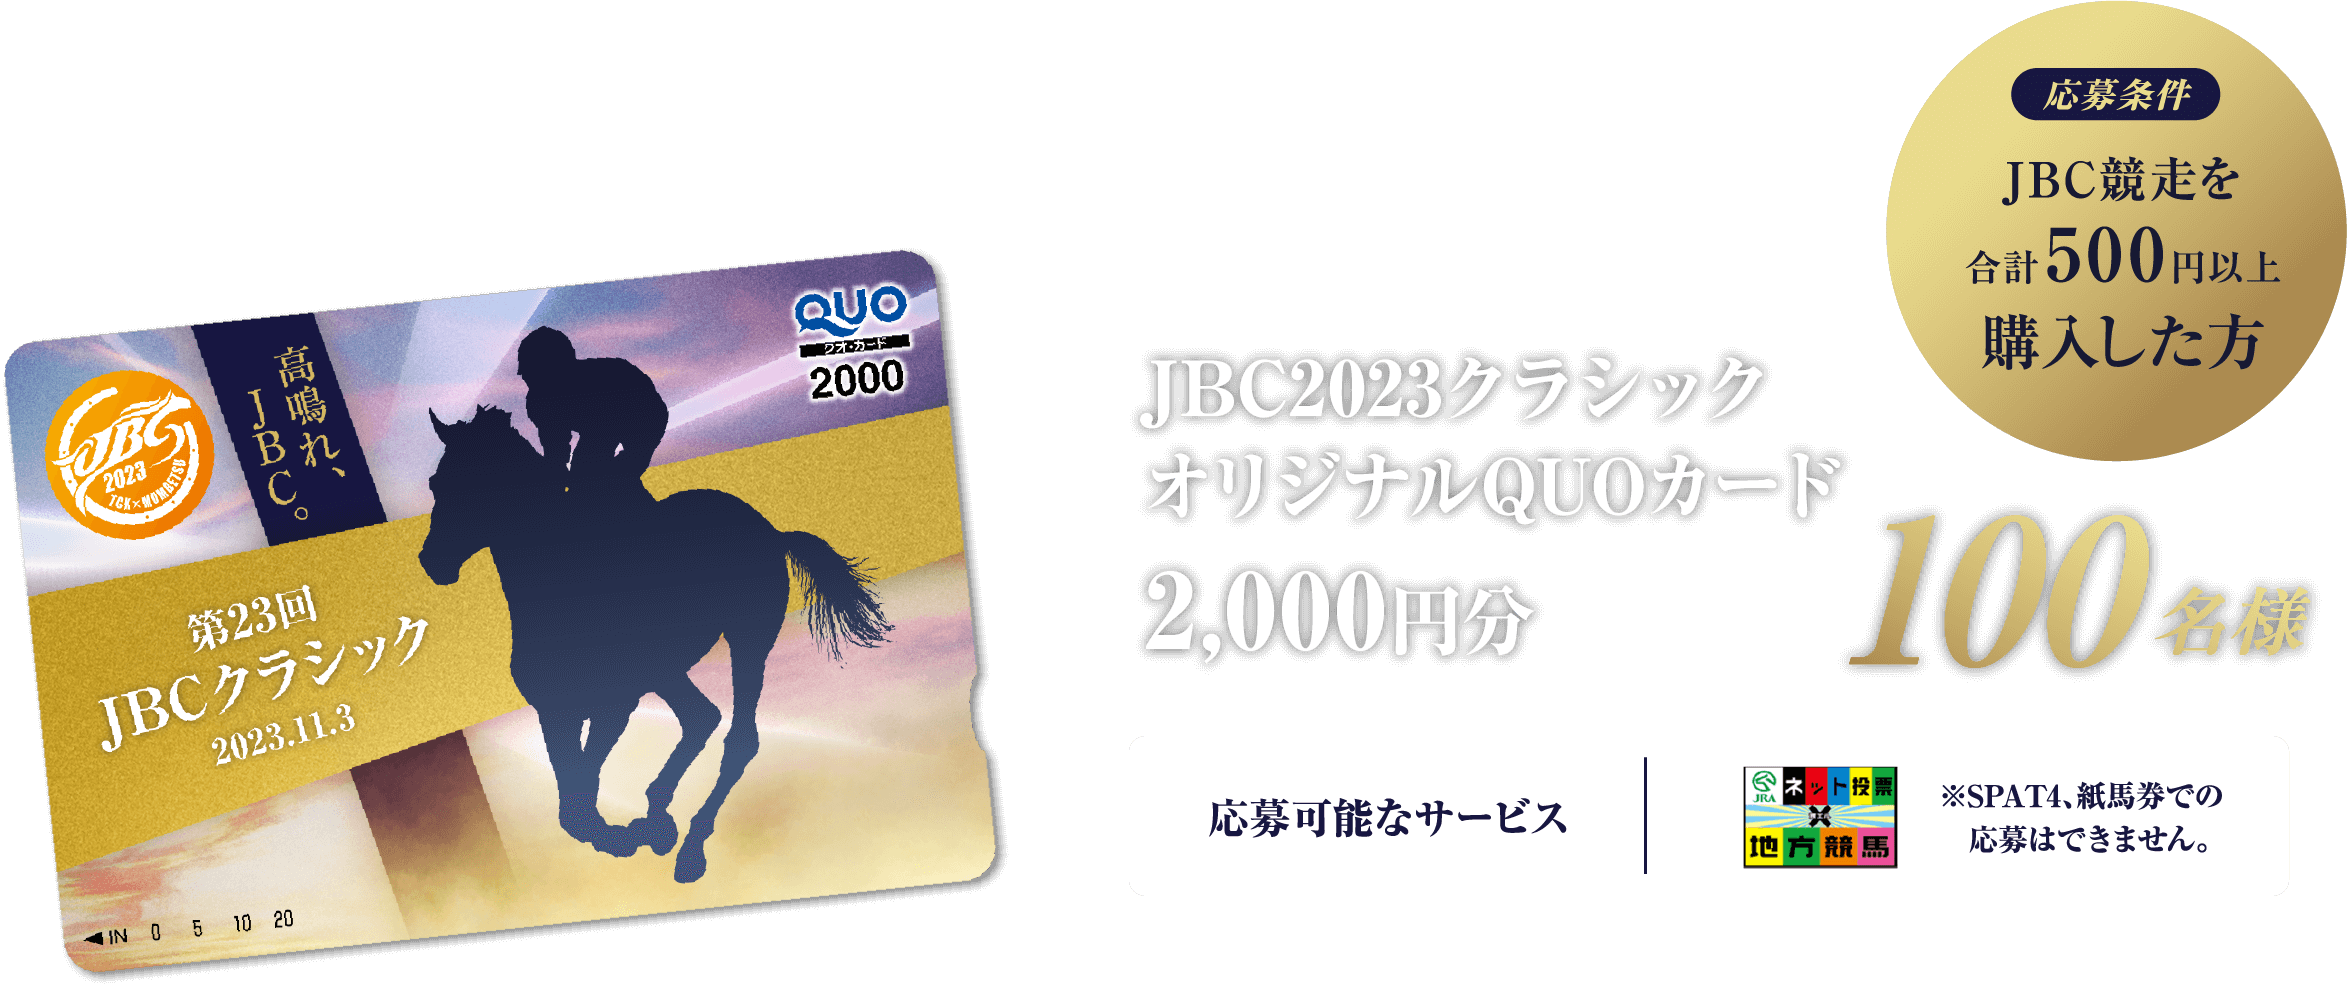 応募条件 JBC競走を合計500円以上購入した方 JBC2023クラシックオリジナルQUOカード2,000円分 100名様